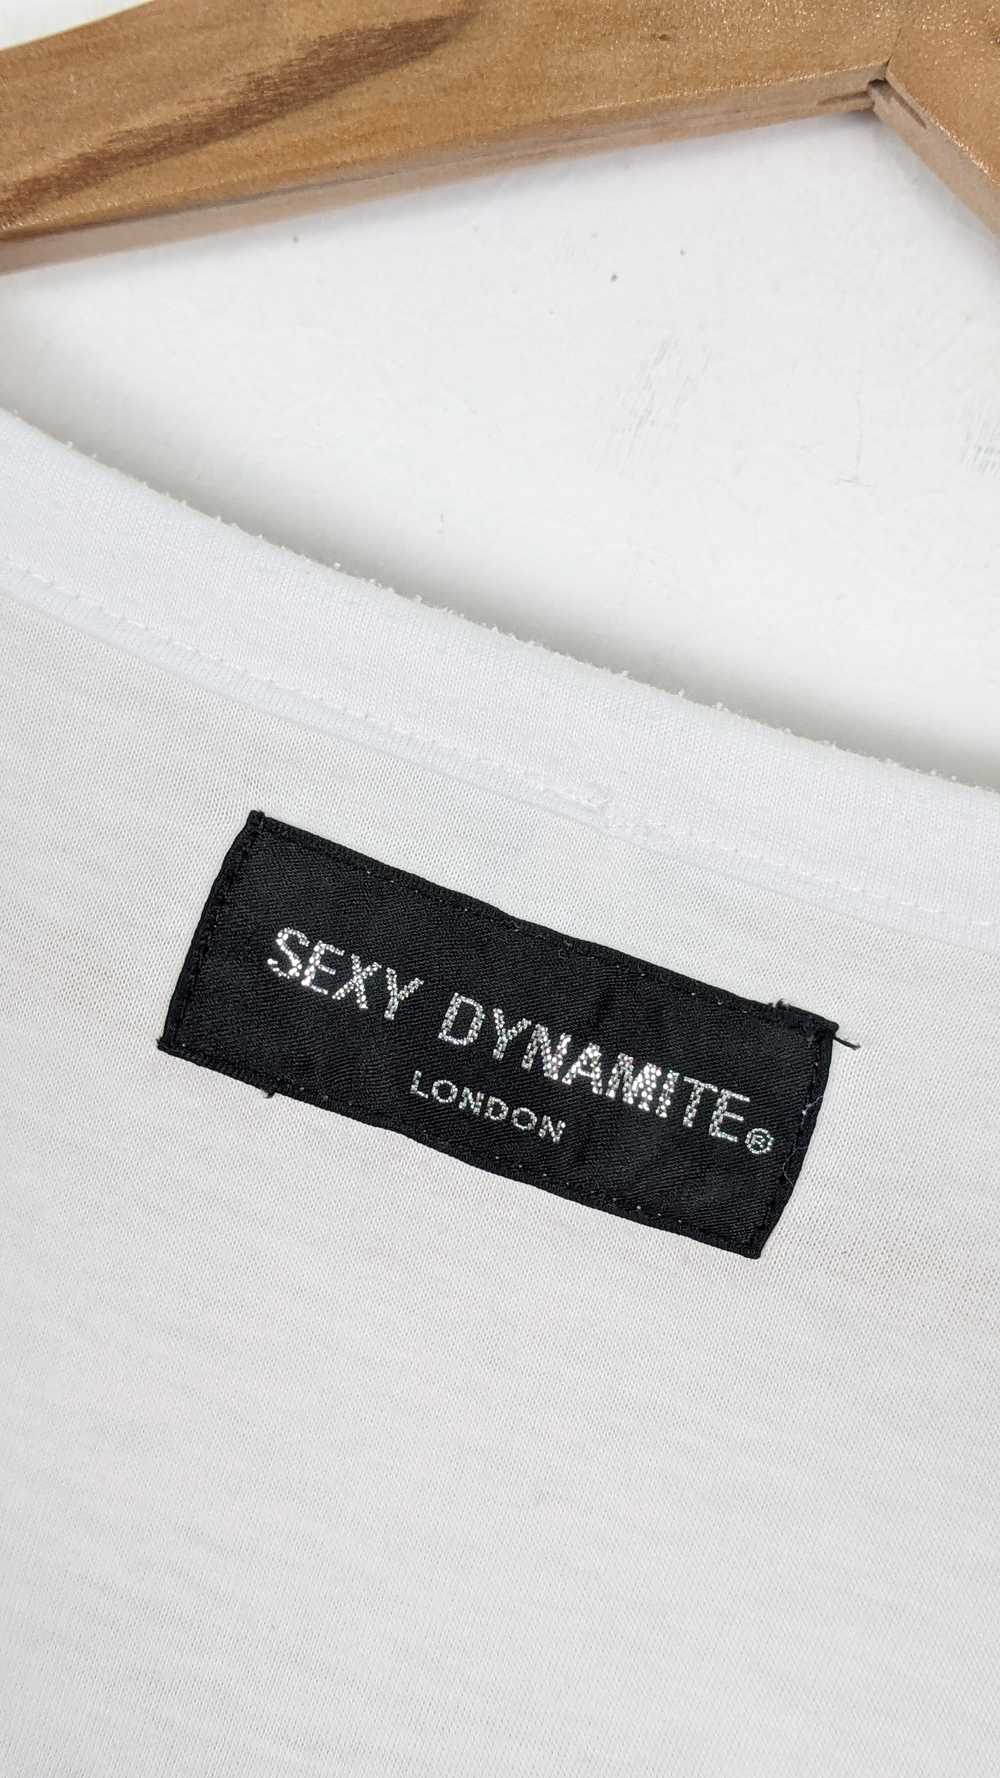 Japanese Brand - Sexy Dynamite London Punk shirt - image 4